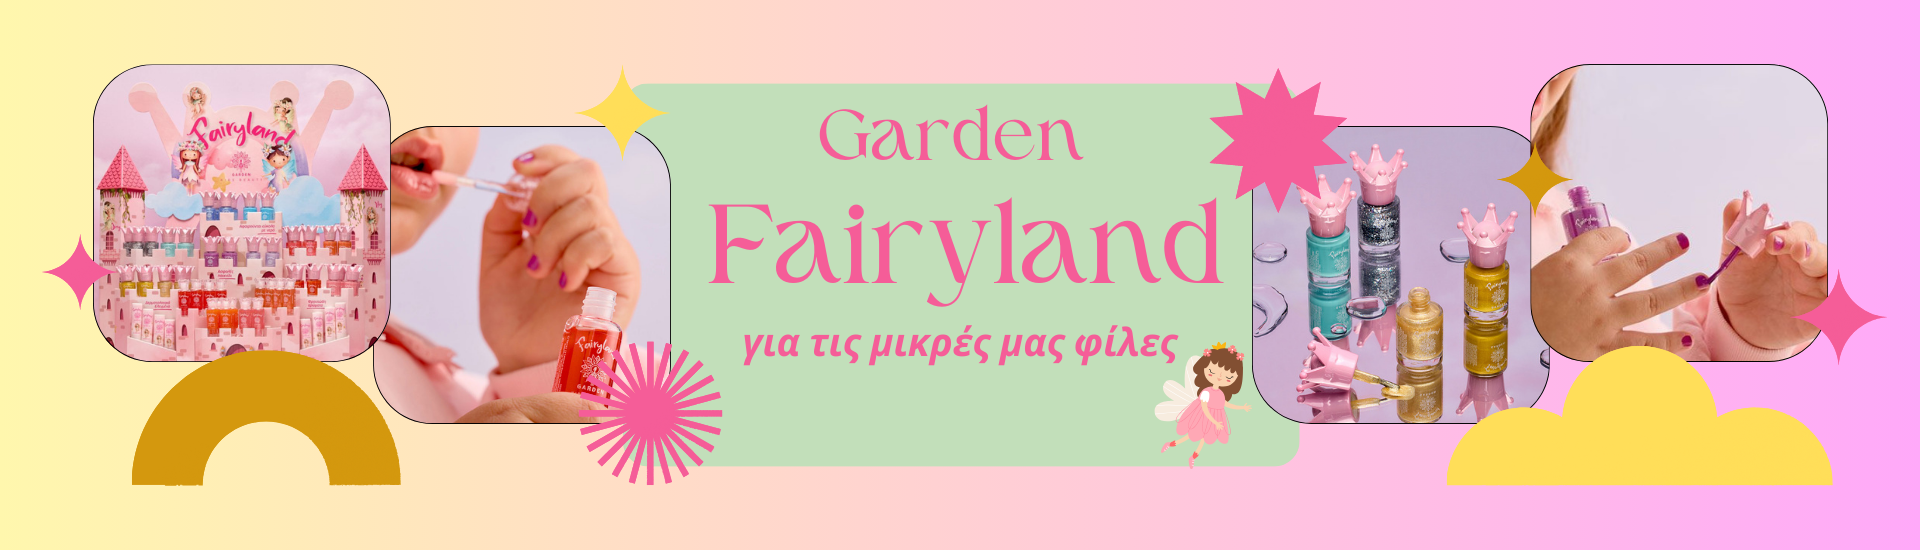 Fairyland(1)